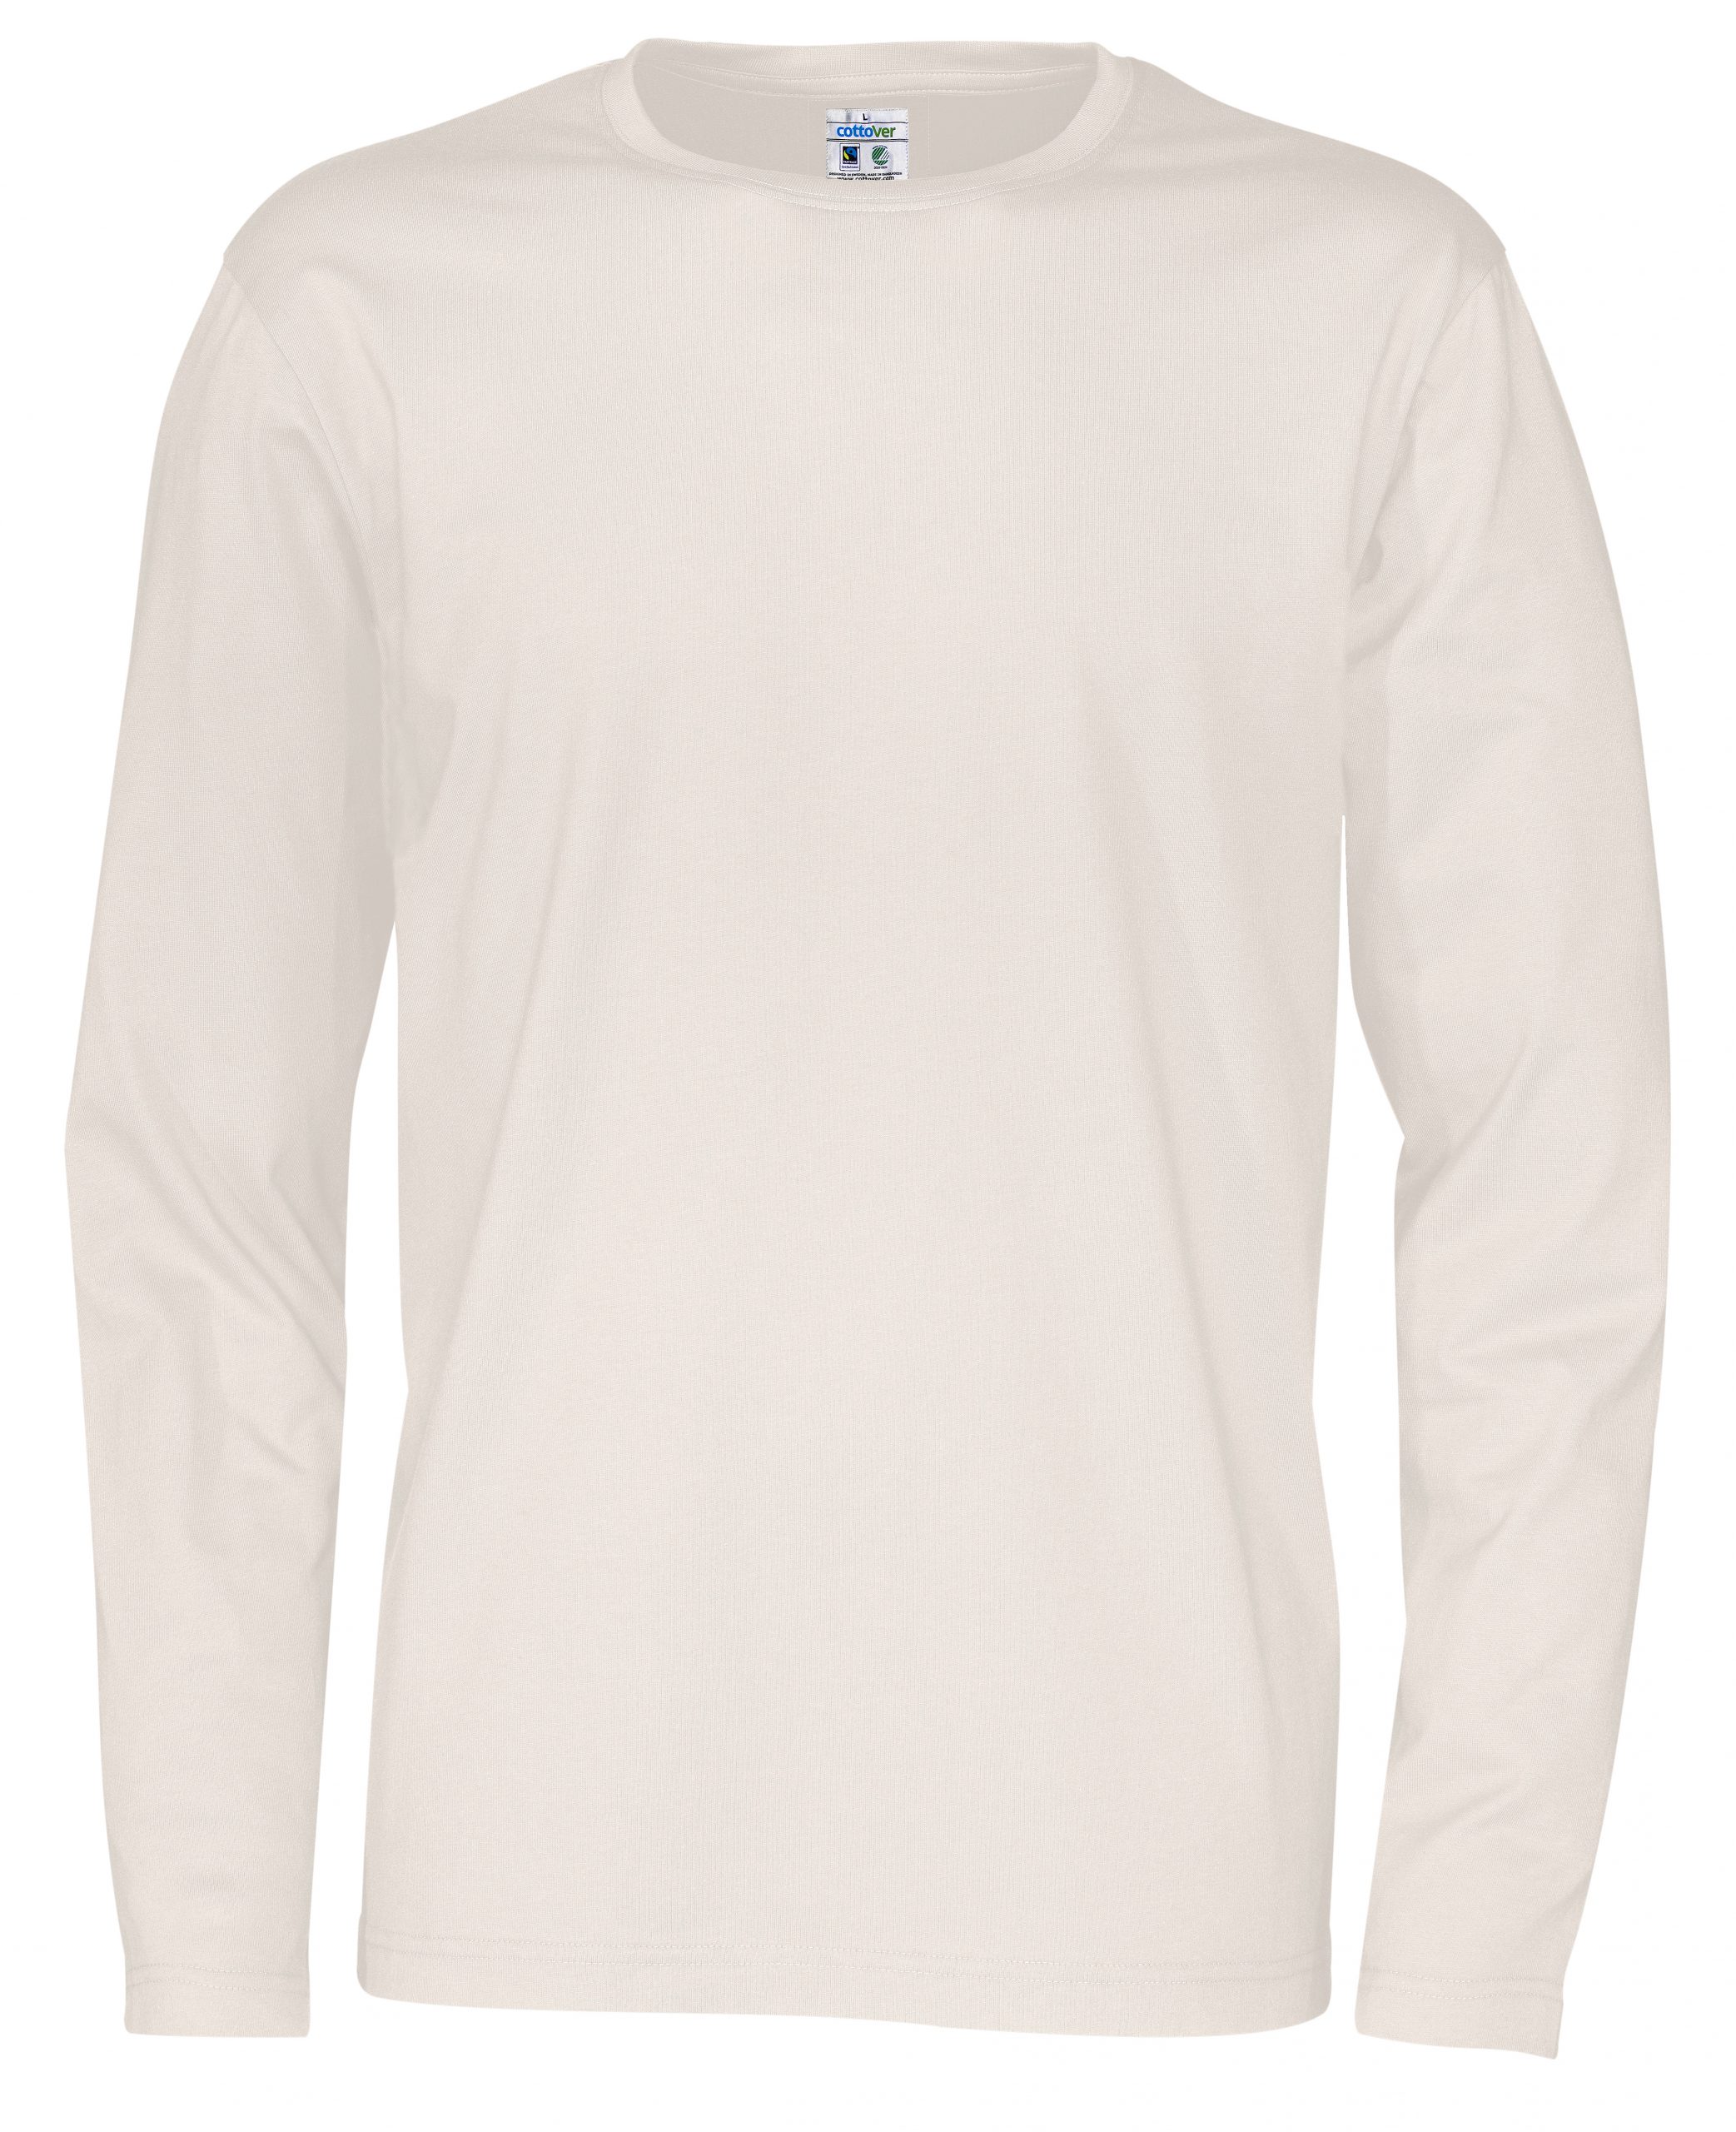 Cottover Cottover T-paita pitkähihainen L.valkoinen